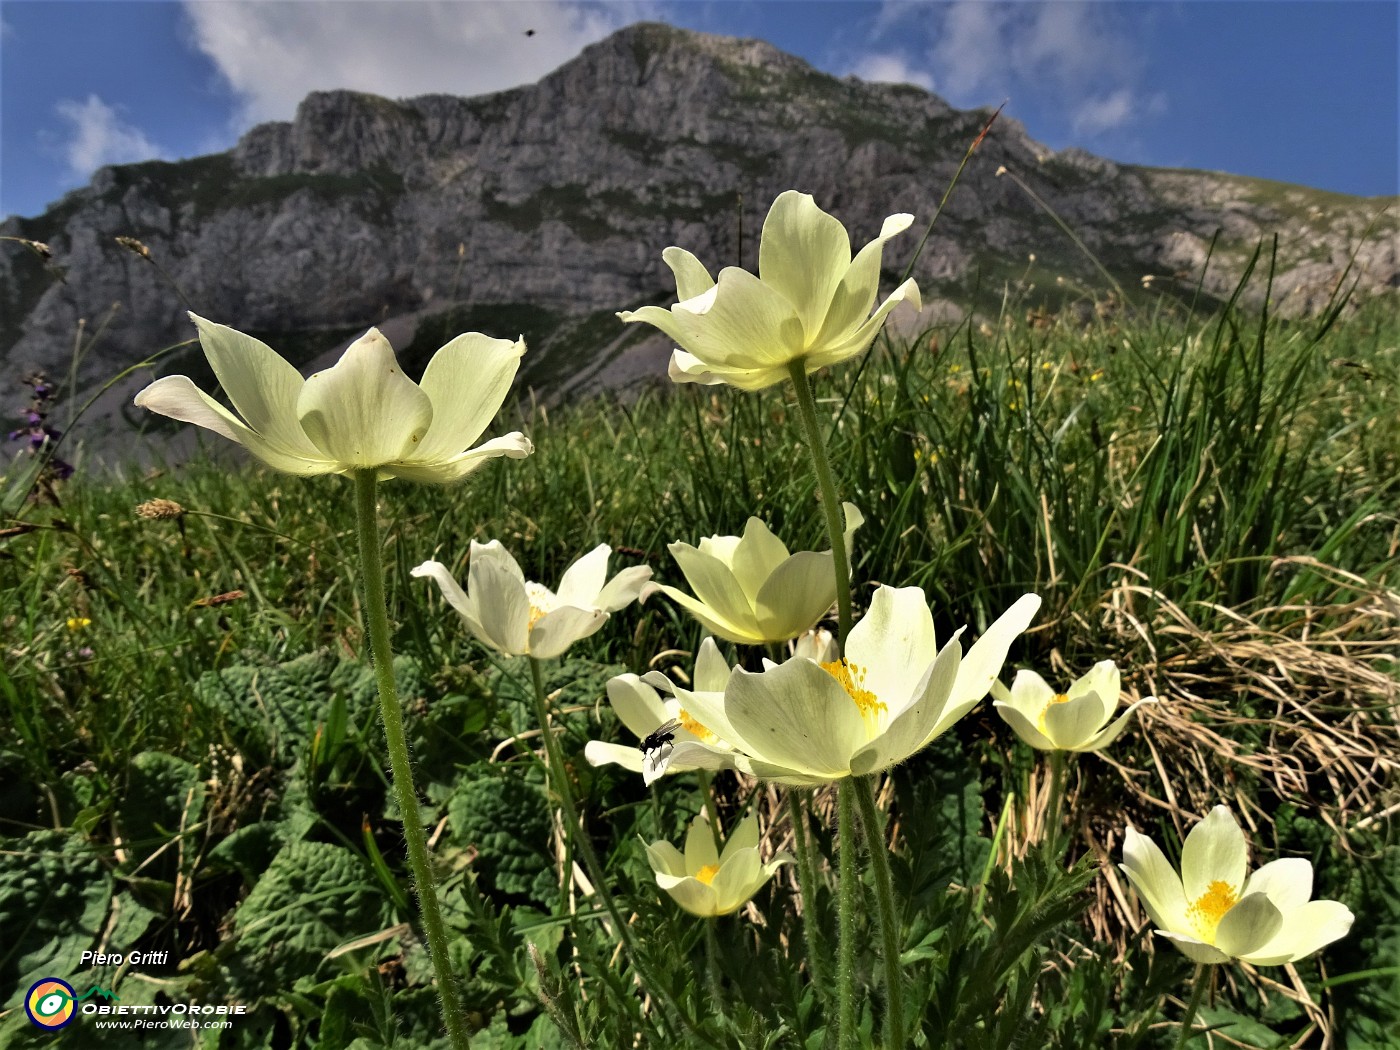 48 Pulsatilla alpina sulphurea (Pulsatilla alpina sulfurea) con vista in Corna Piana.JPG